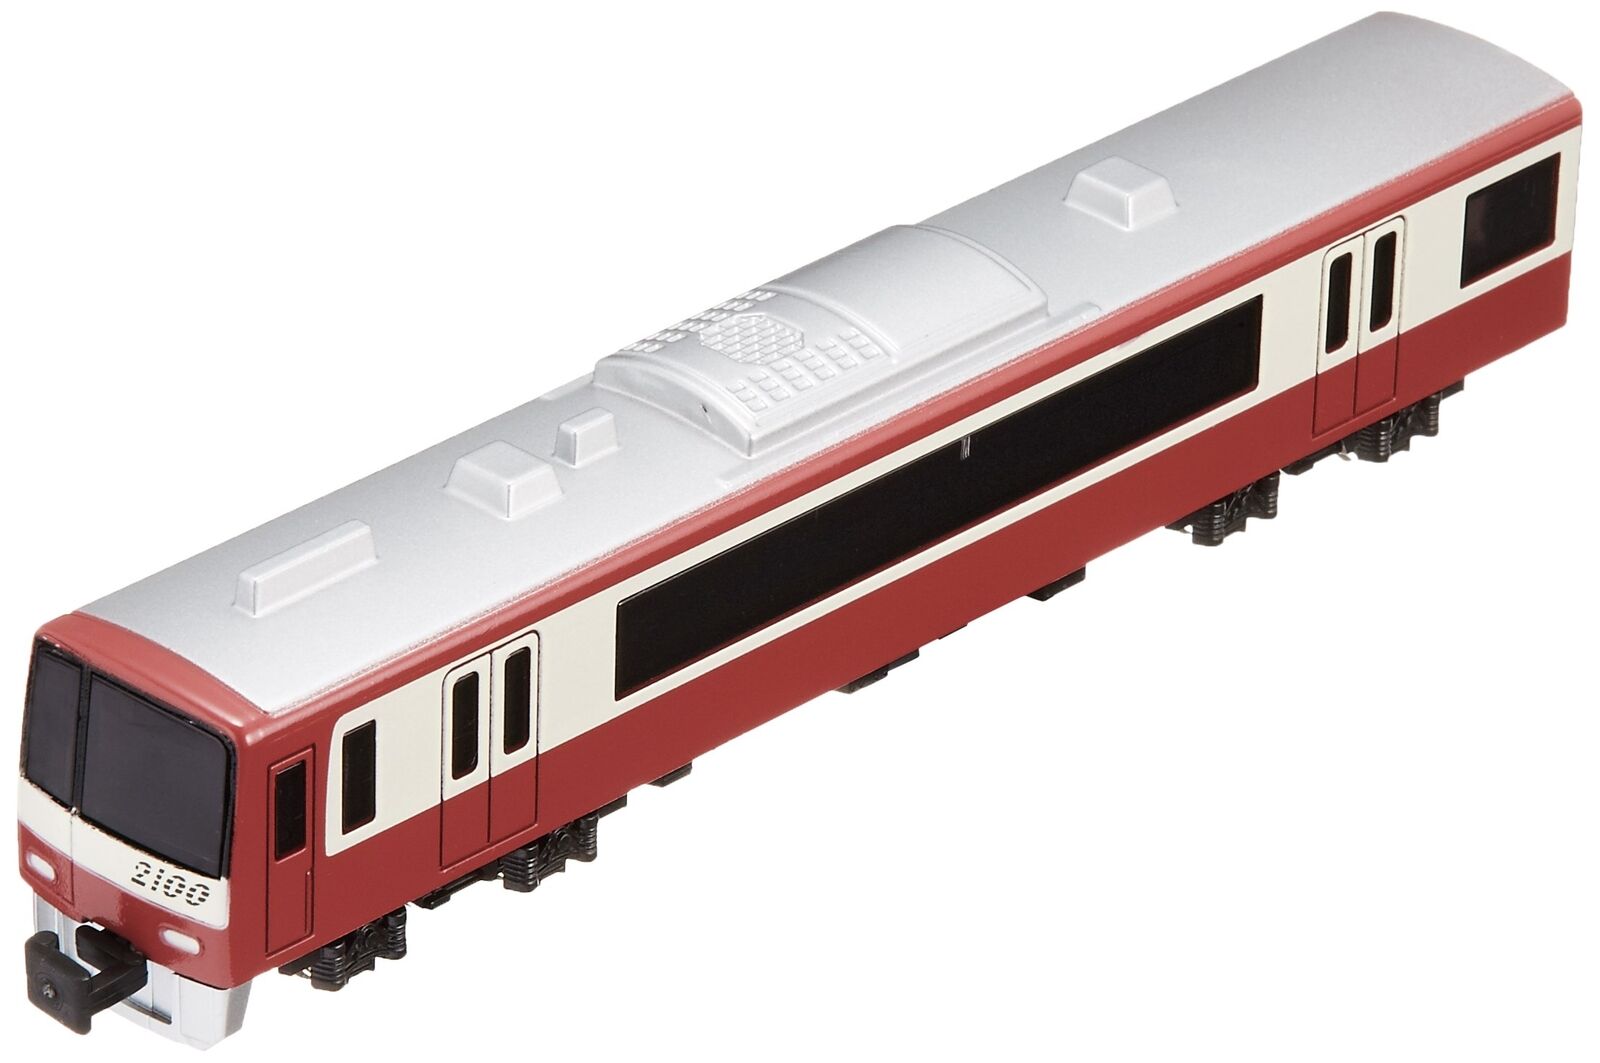 [NEW] Train N Gauge Die-cast Scale Model No.19 Keikyu 2100 Series